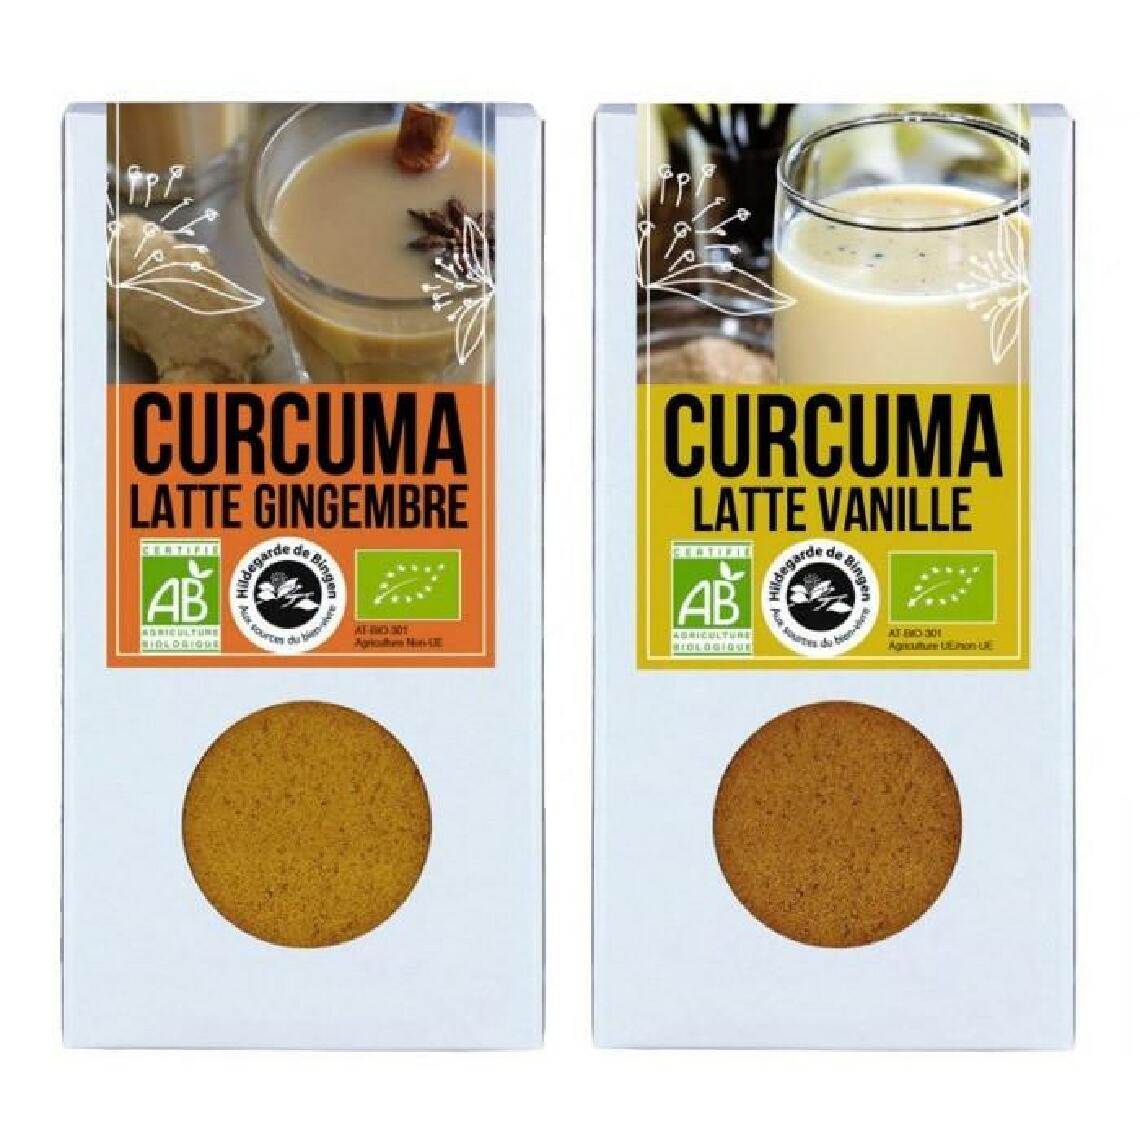 Aromandise - Duo de Latte - curcuma-gingembre & curcuma-vanille - Kits créatifs